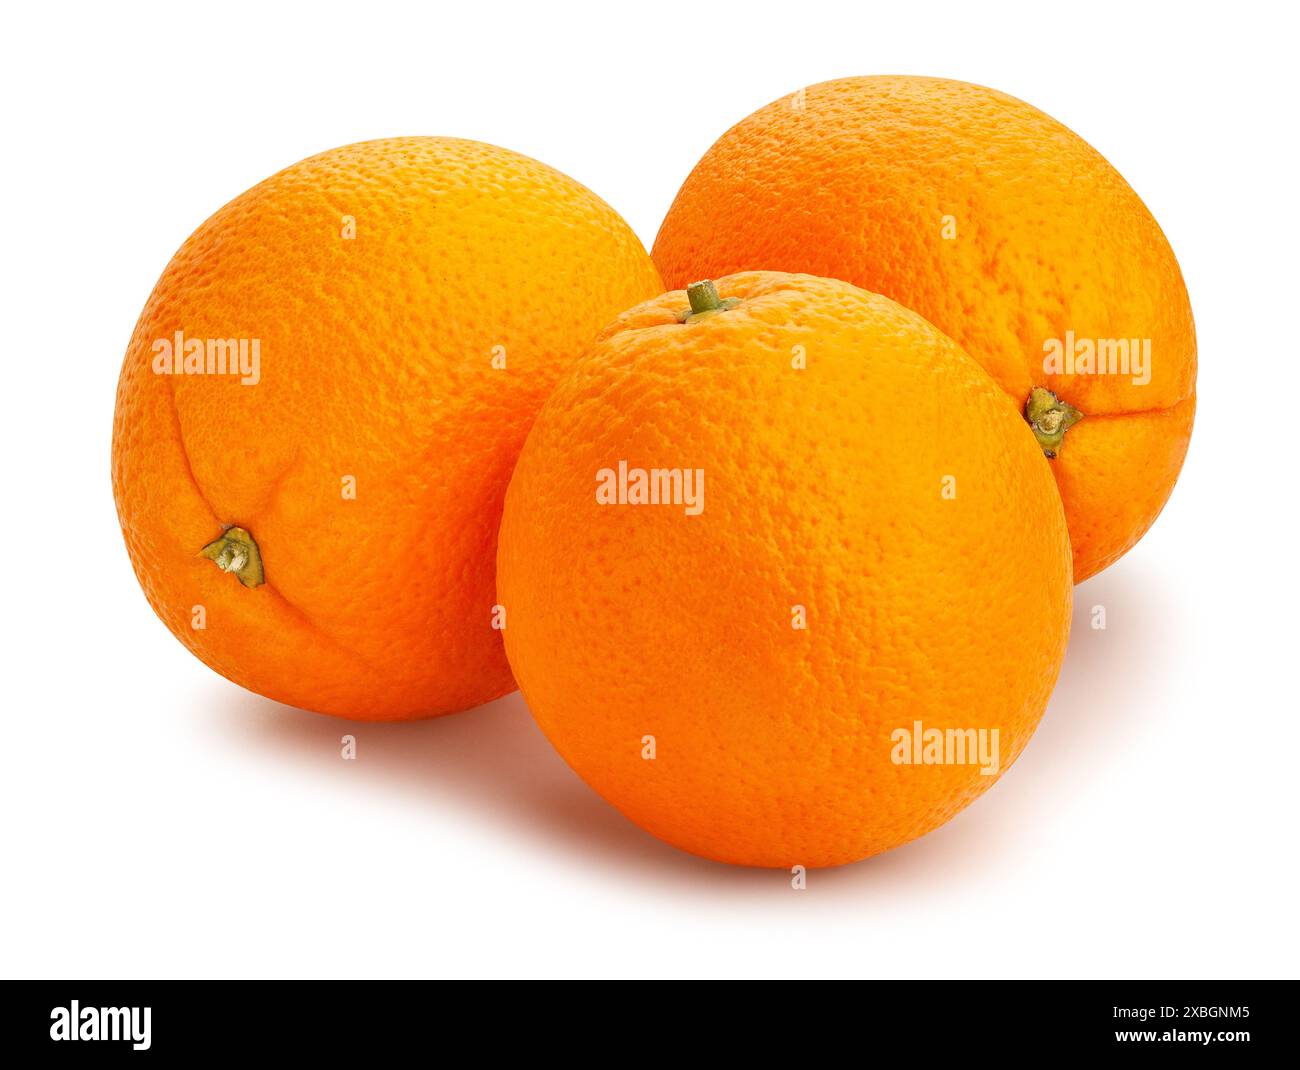 orange fruit path isolated on white Stock Photo